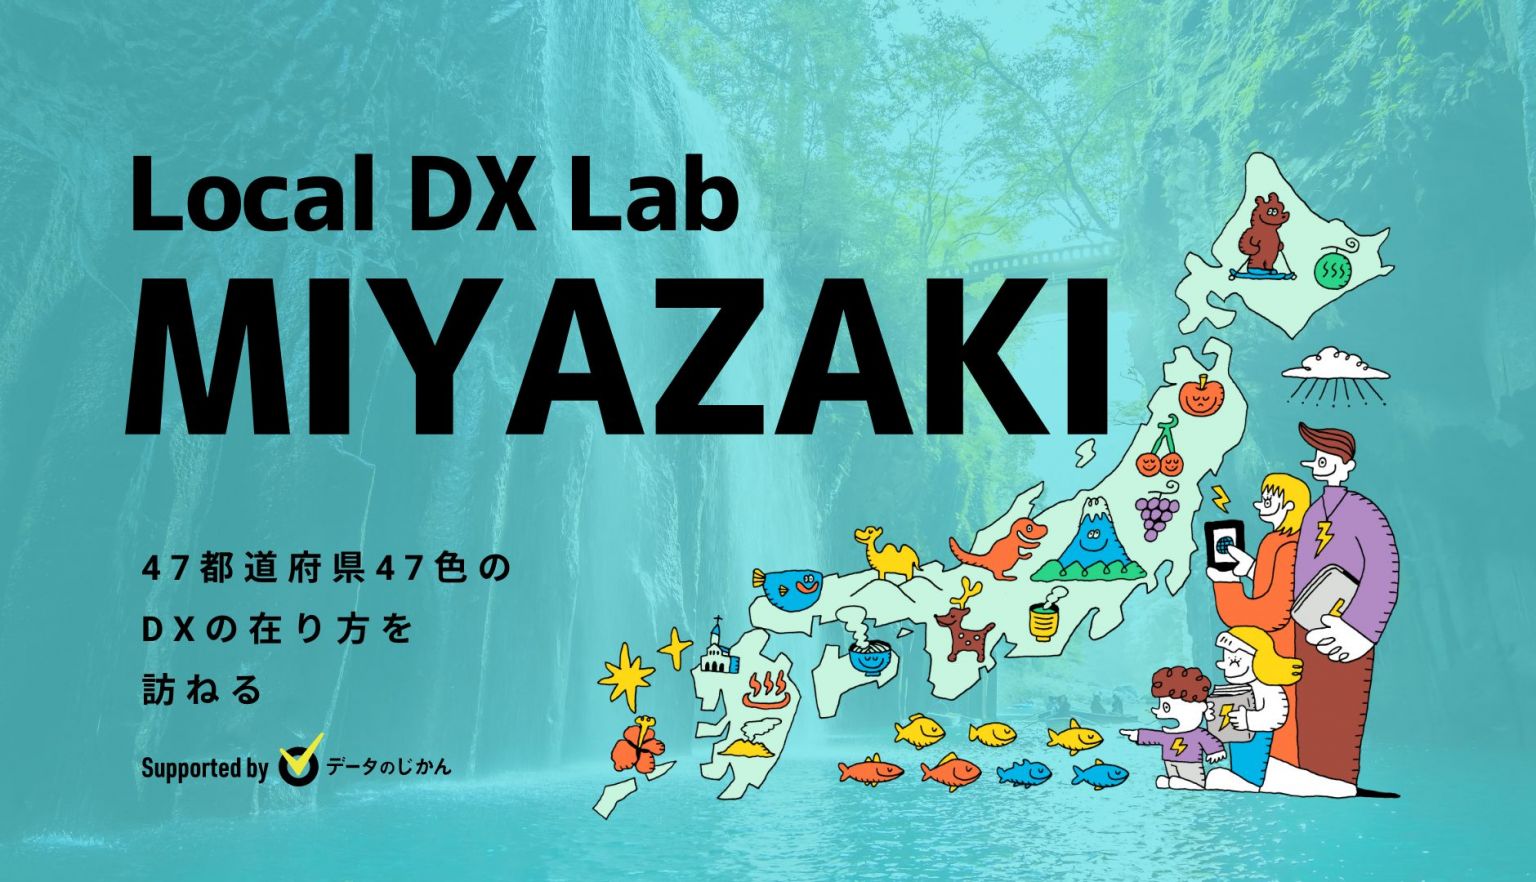 宮崎県の地域DX・デジタル化支援一覧47都道府県47色のDXの在り方を訪ねるLocalDXLab